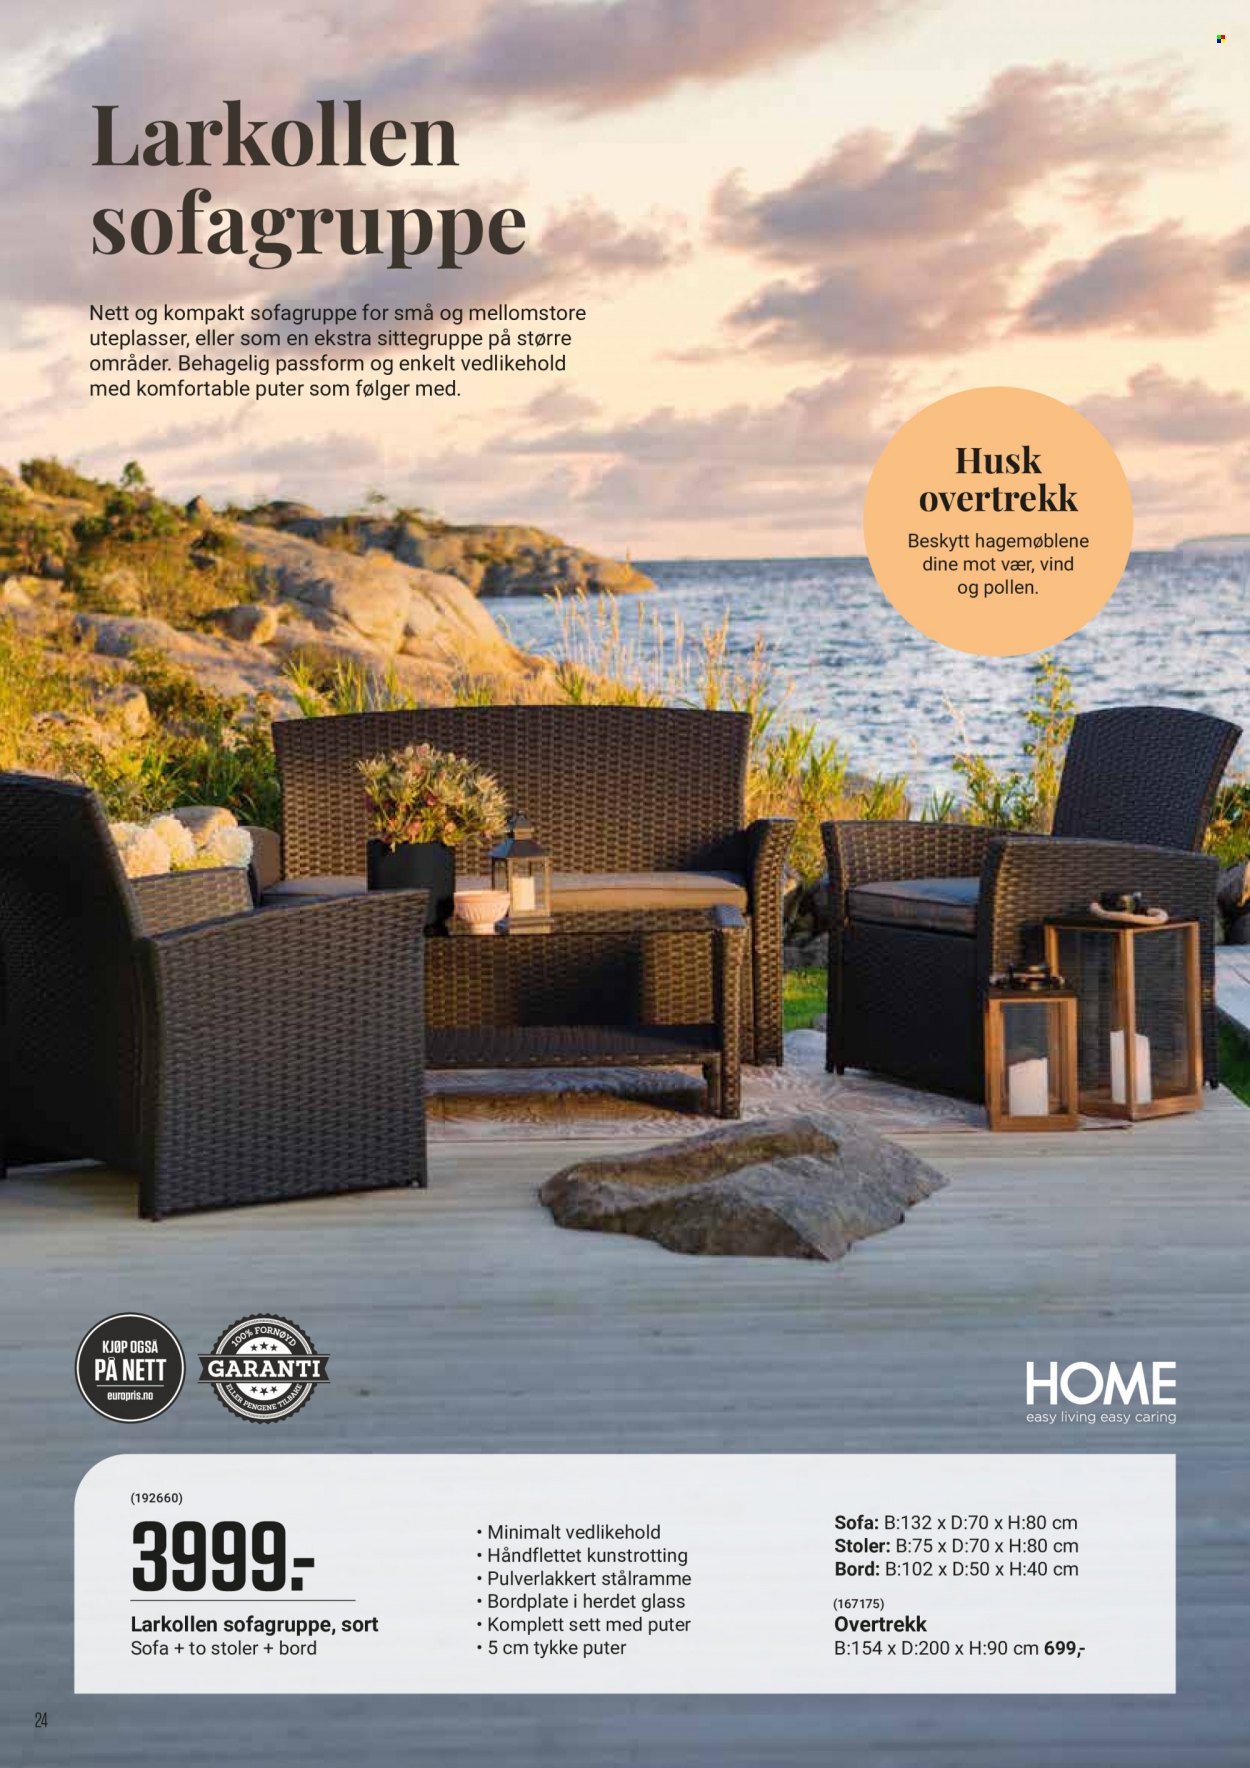 Kundeavis Europris - Produkter fra tilbudsaviser - bord, puter, stol, sofa. Side 24.